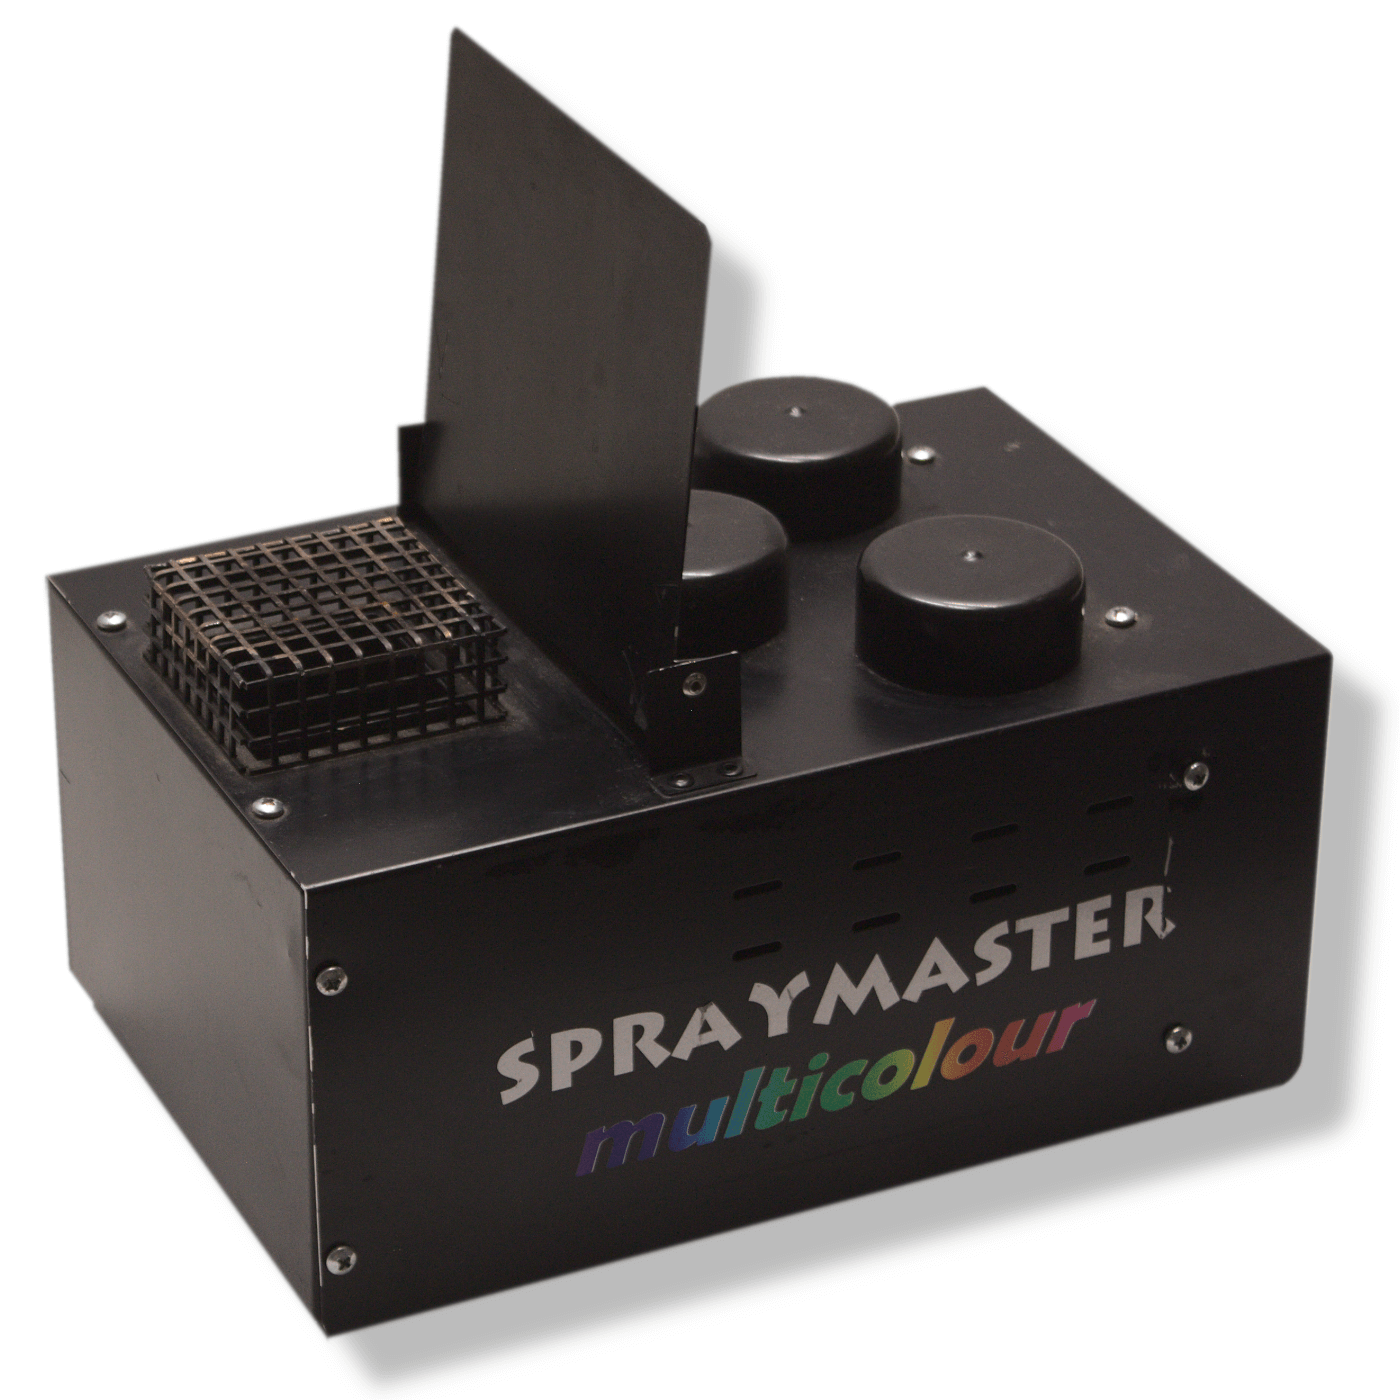 Spraymaster